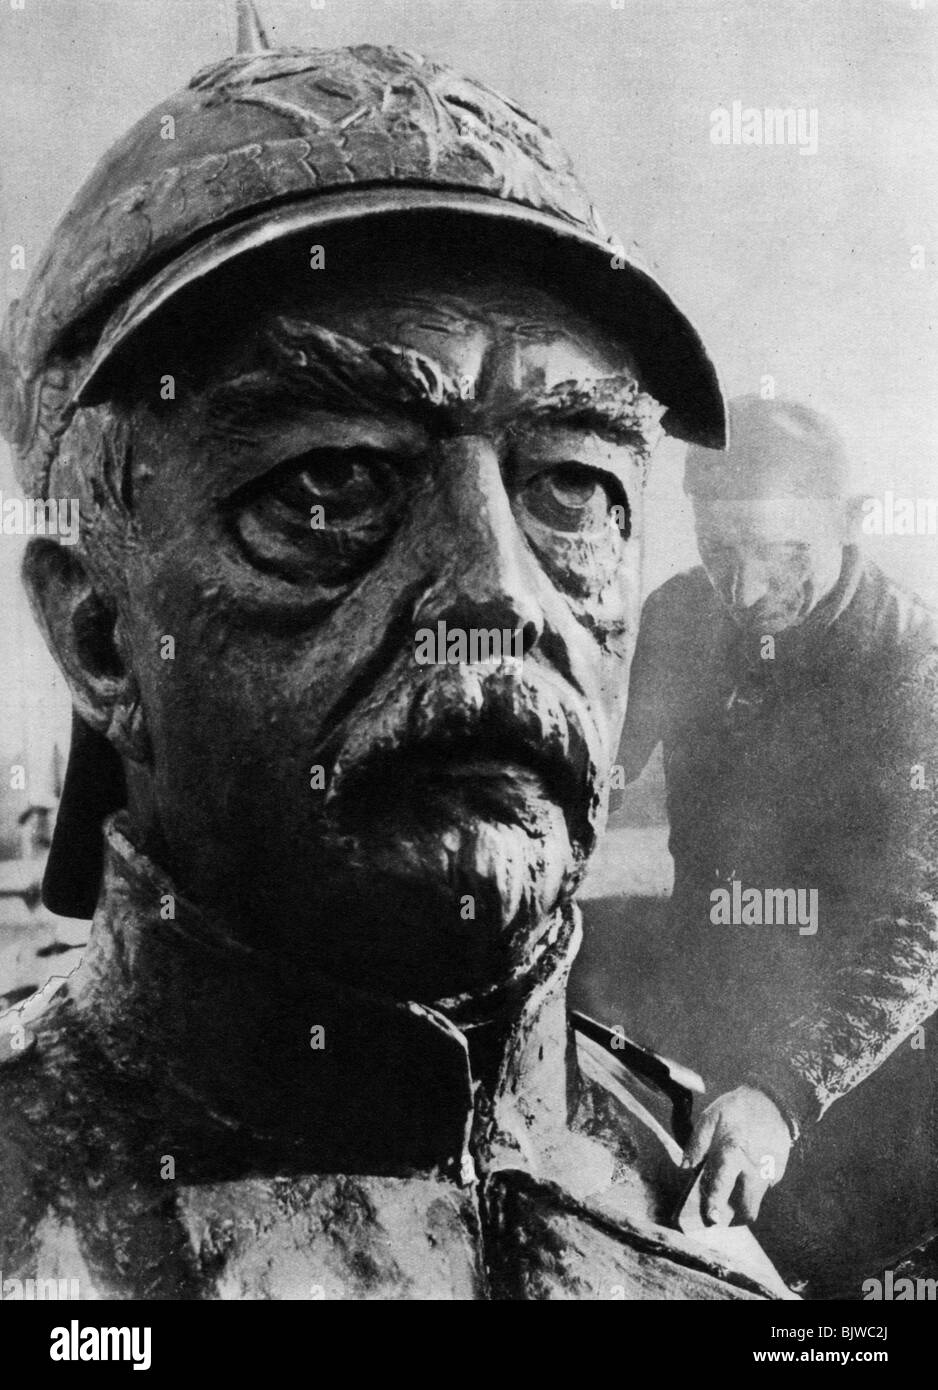 Sculpture of Otto von Bismarck, 19th century Prussian statesman, 1937.Artist: Wide World Photos Stock Photo